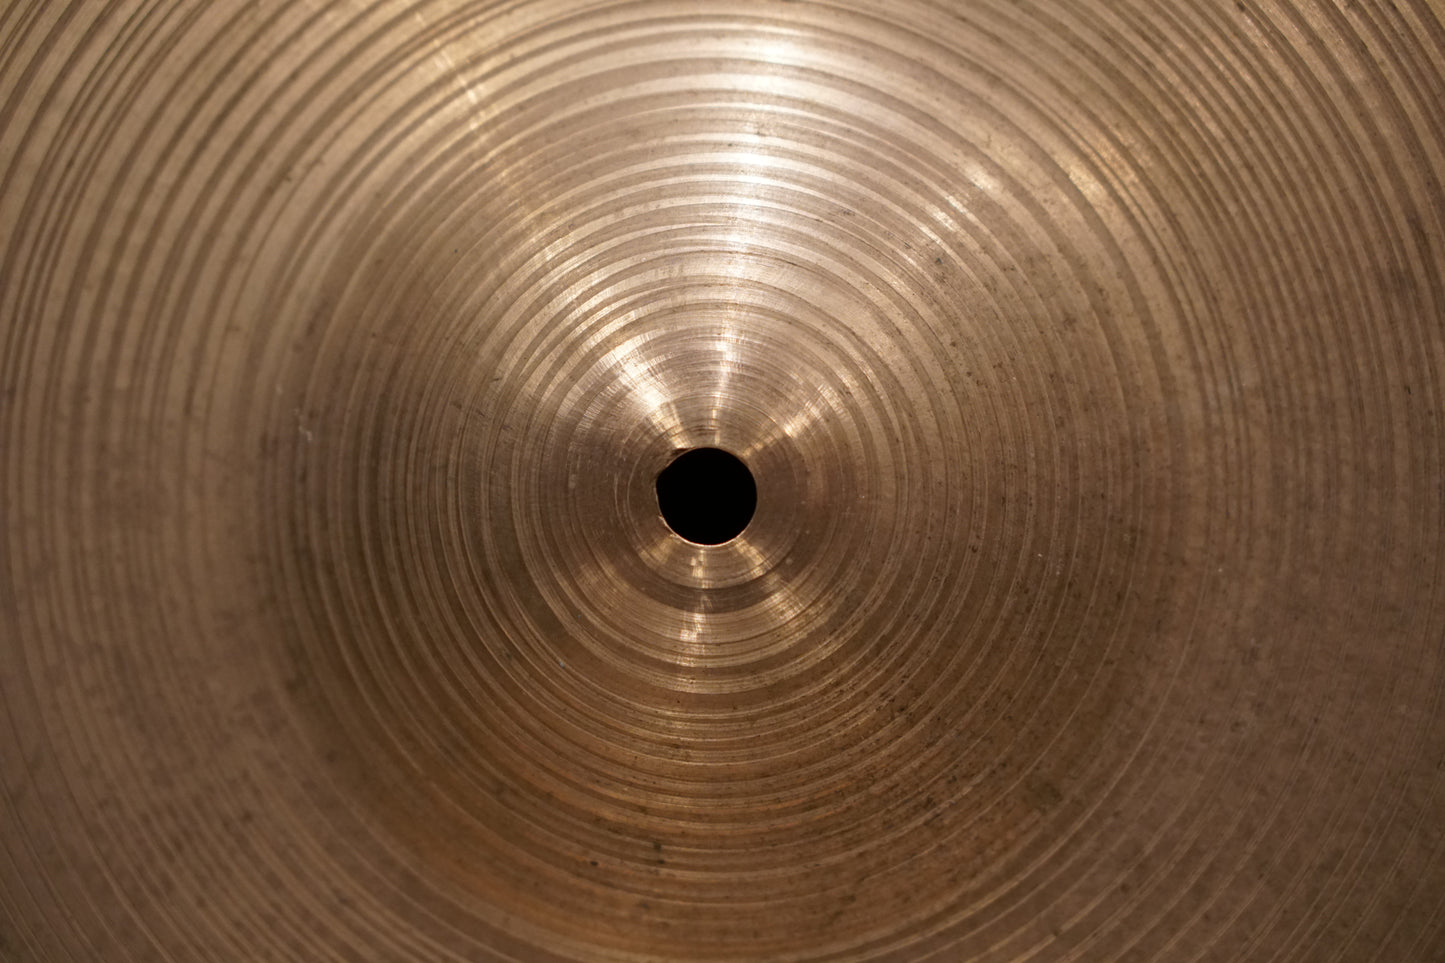 Zanki 20" Heavy Ride Cymbal - 2790g